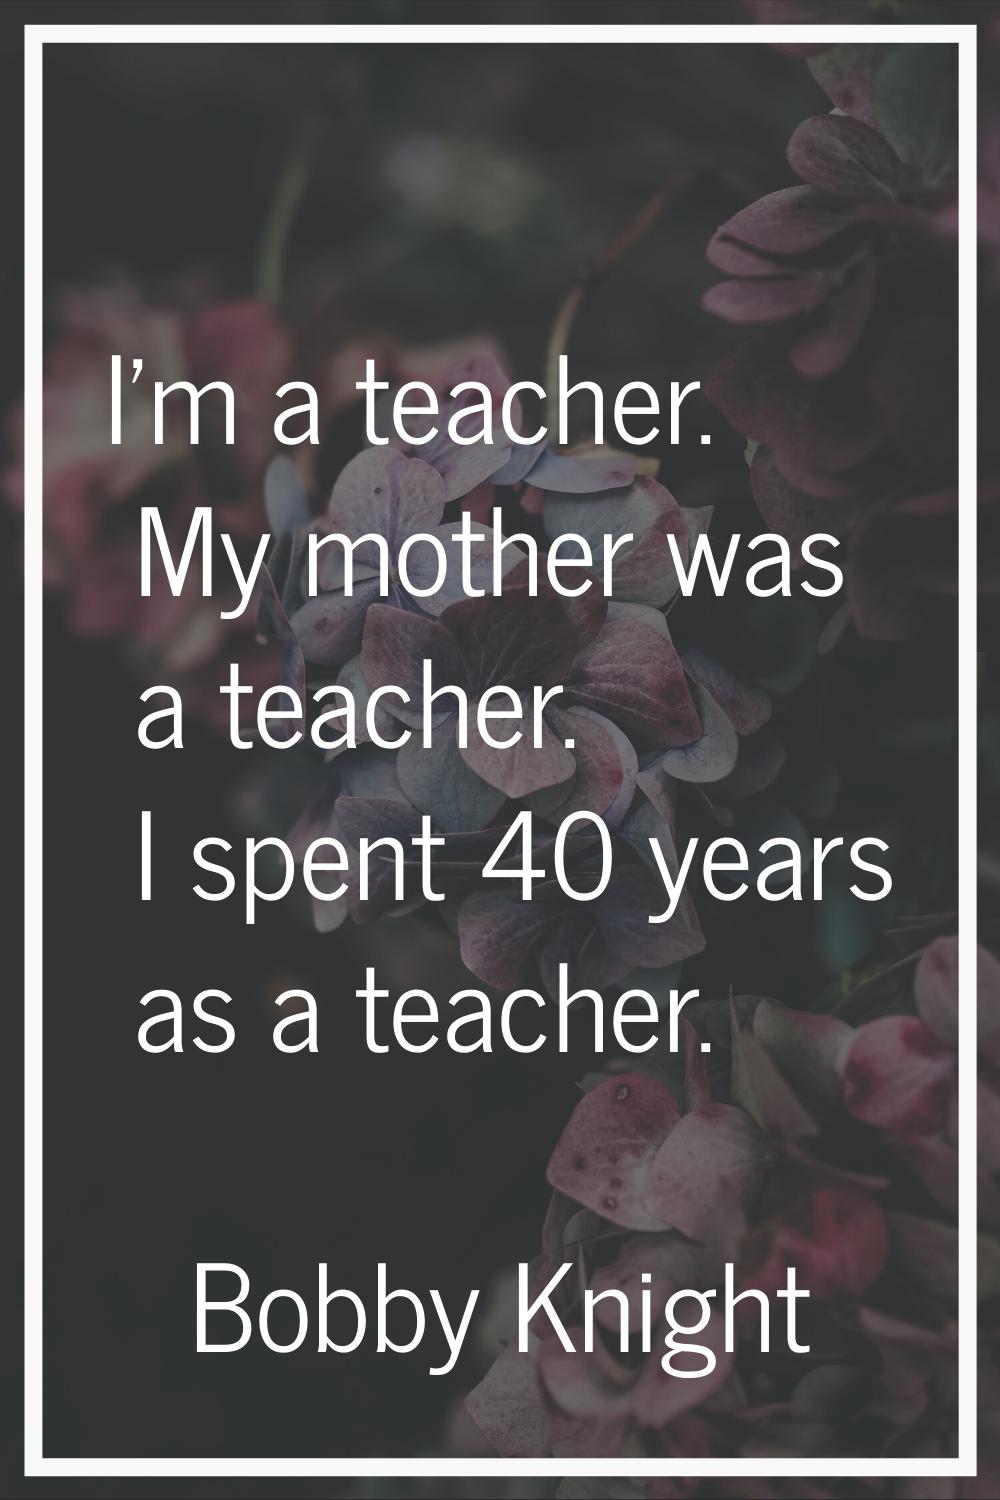 I'm a teacher. My mother was a teacher. I spent 40 years as a teacher.